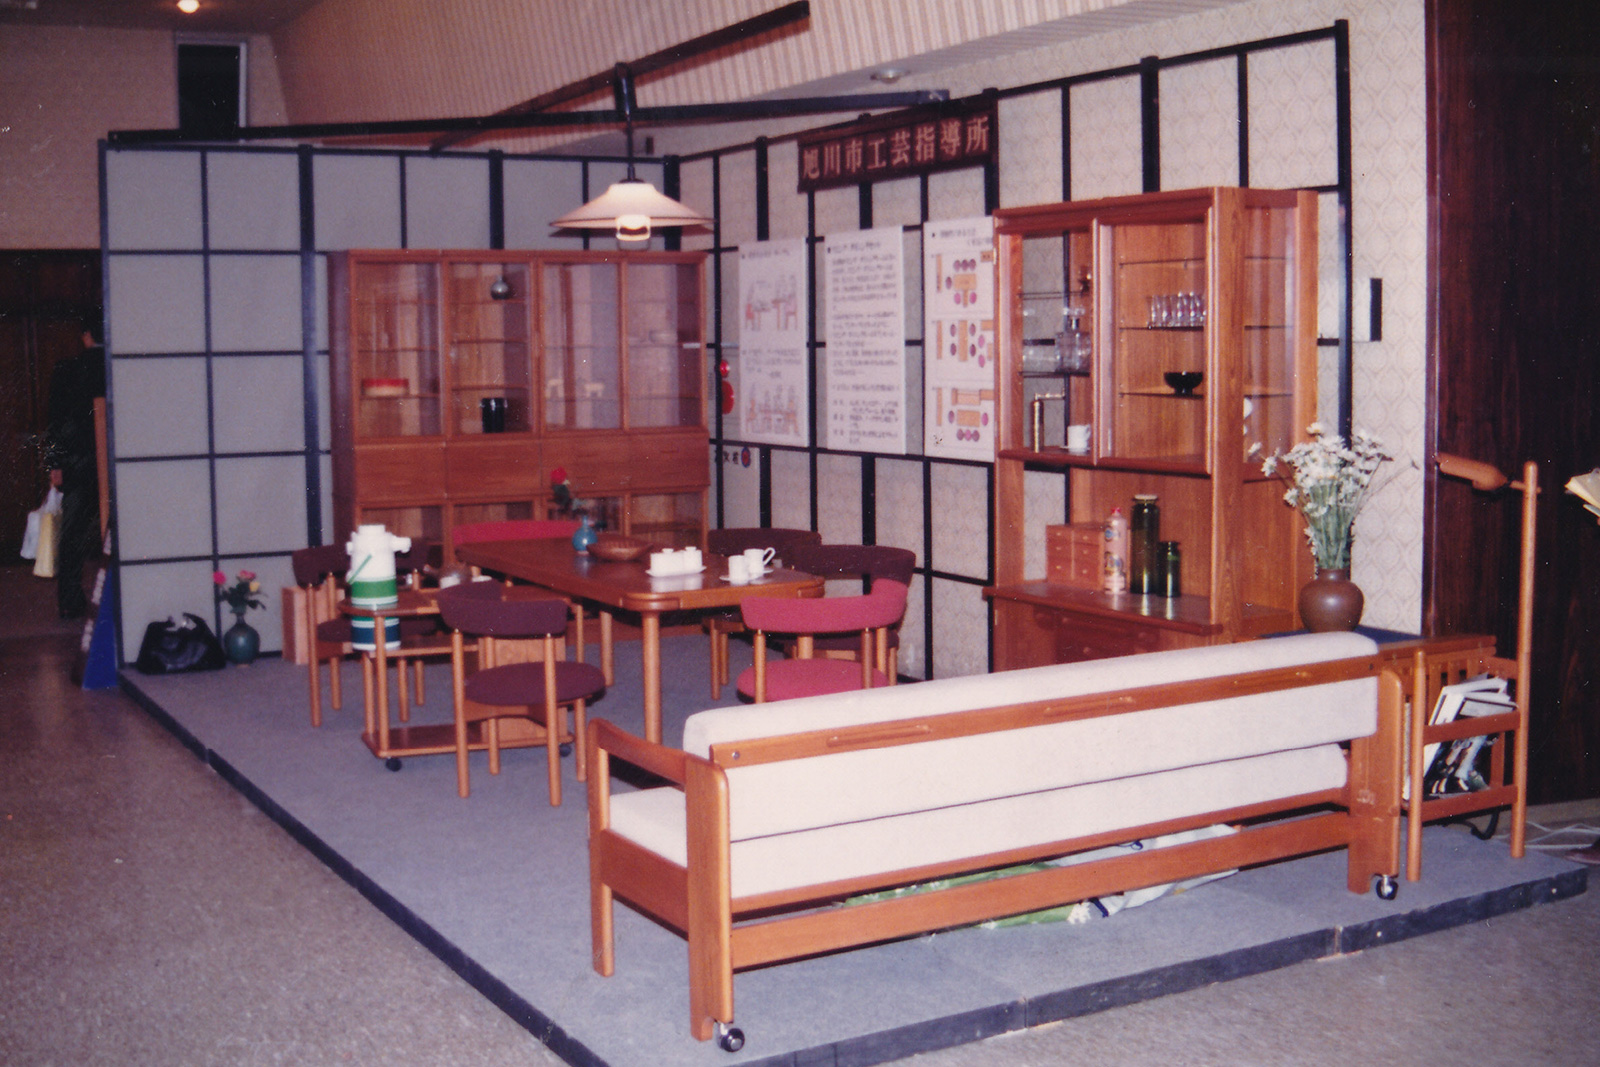 1975 年(昭和 50 年)代の家具業界と工芸指導所